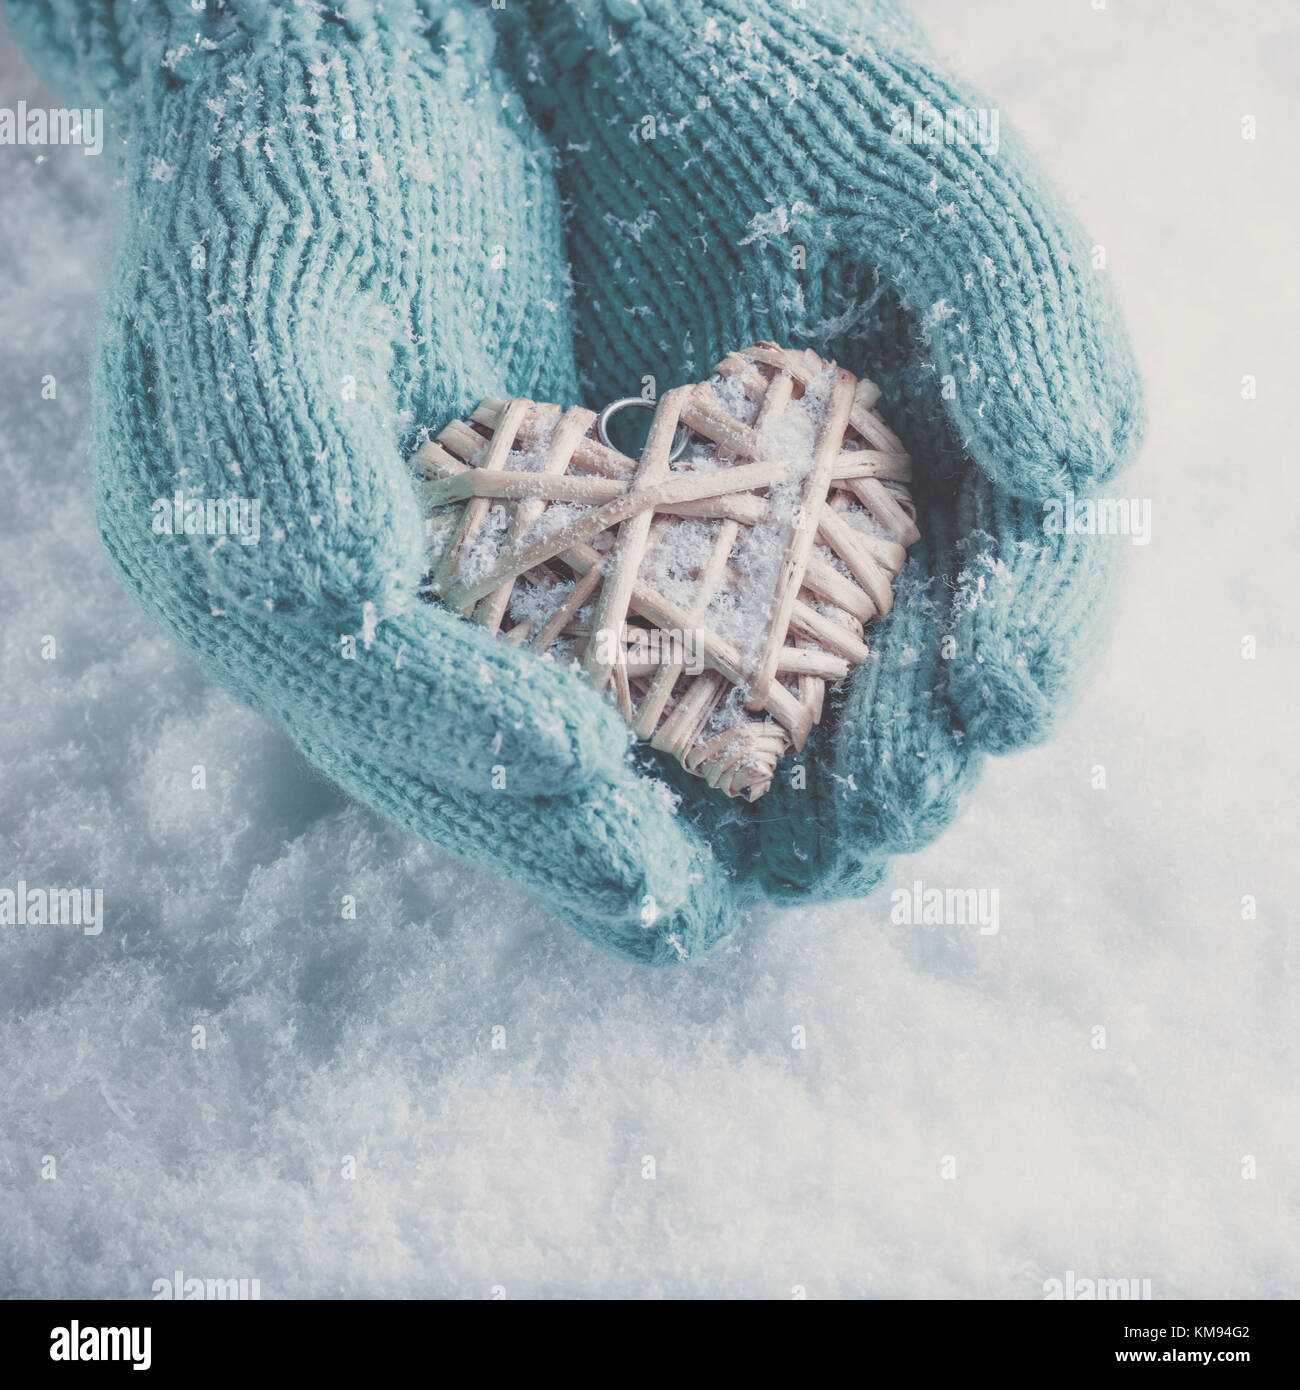 Frau Hände in Light teal Gestrickte Handschuhe halten einen schönen Herzen im Schnee Hintergrund. Liebe und st. Valentin Konzept. instagram Wirkung. Stockfoto